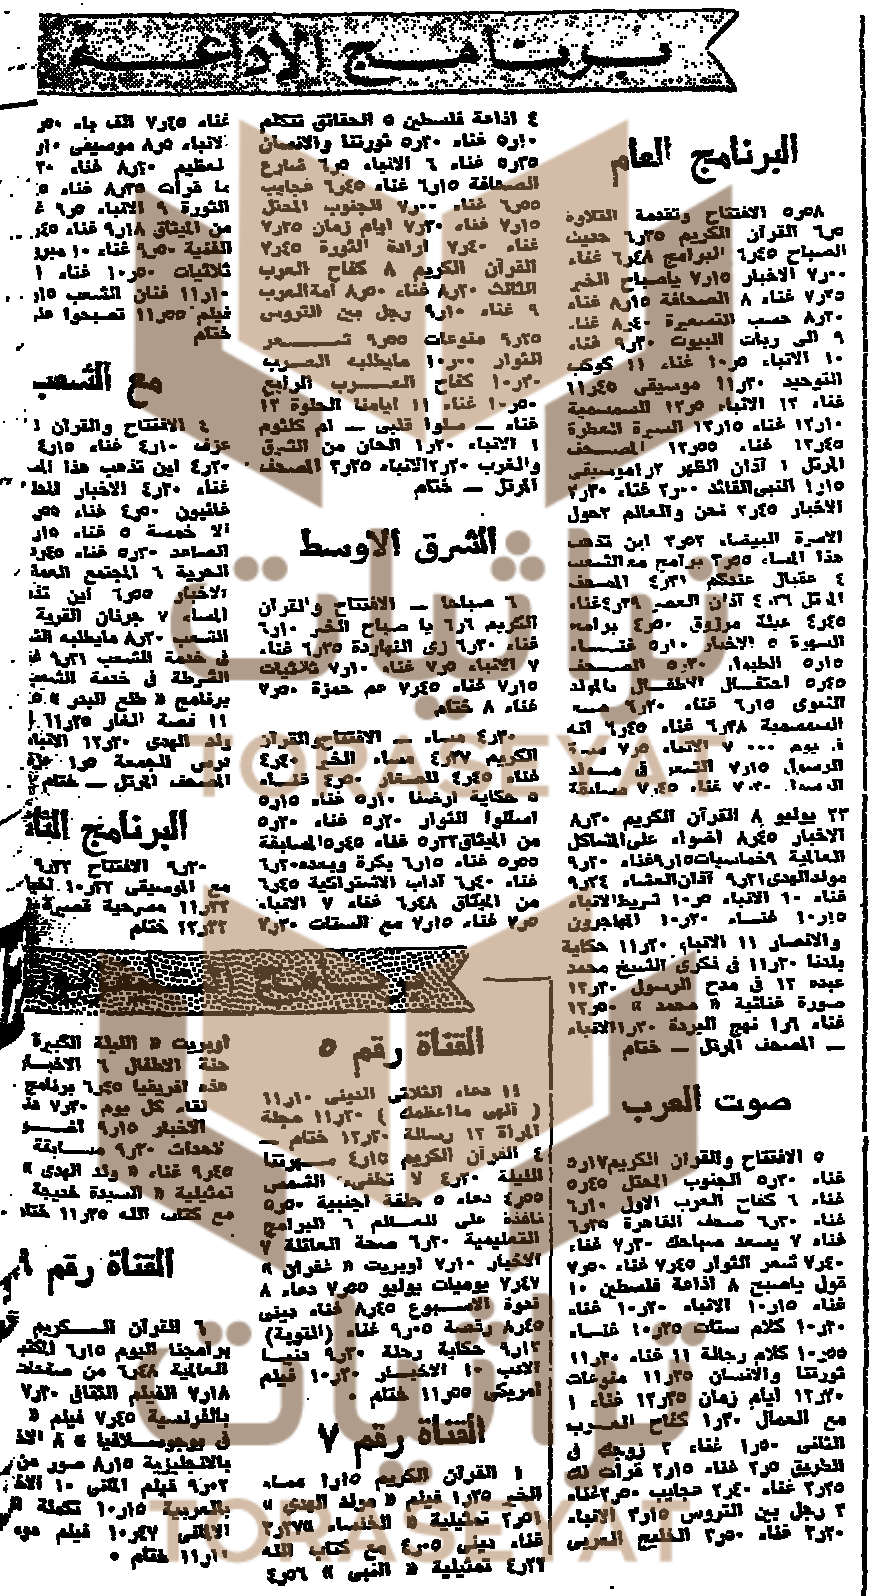 فقرات الإذاعة والتلفزيون في المولد النبوي يوم 11 يوليو 1965